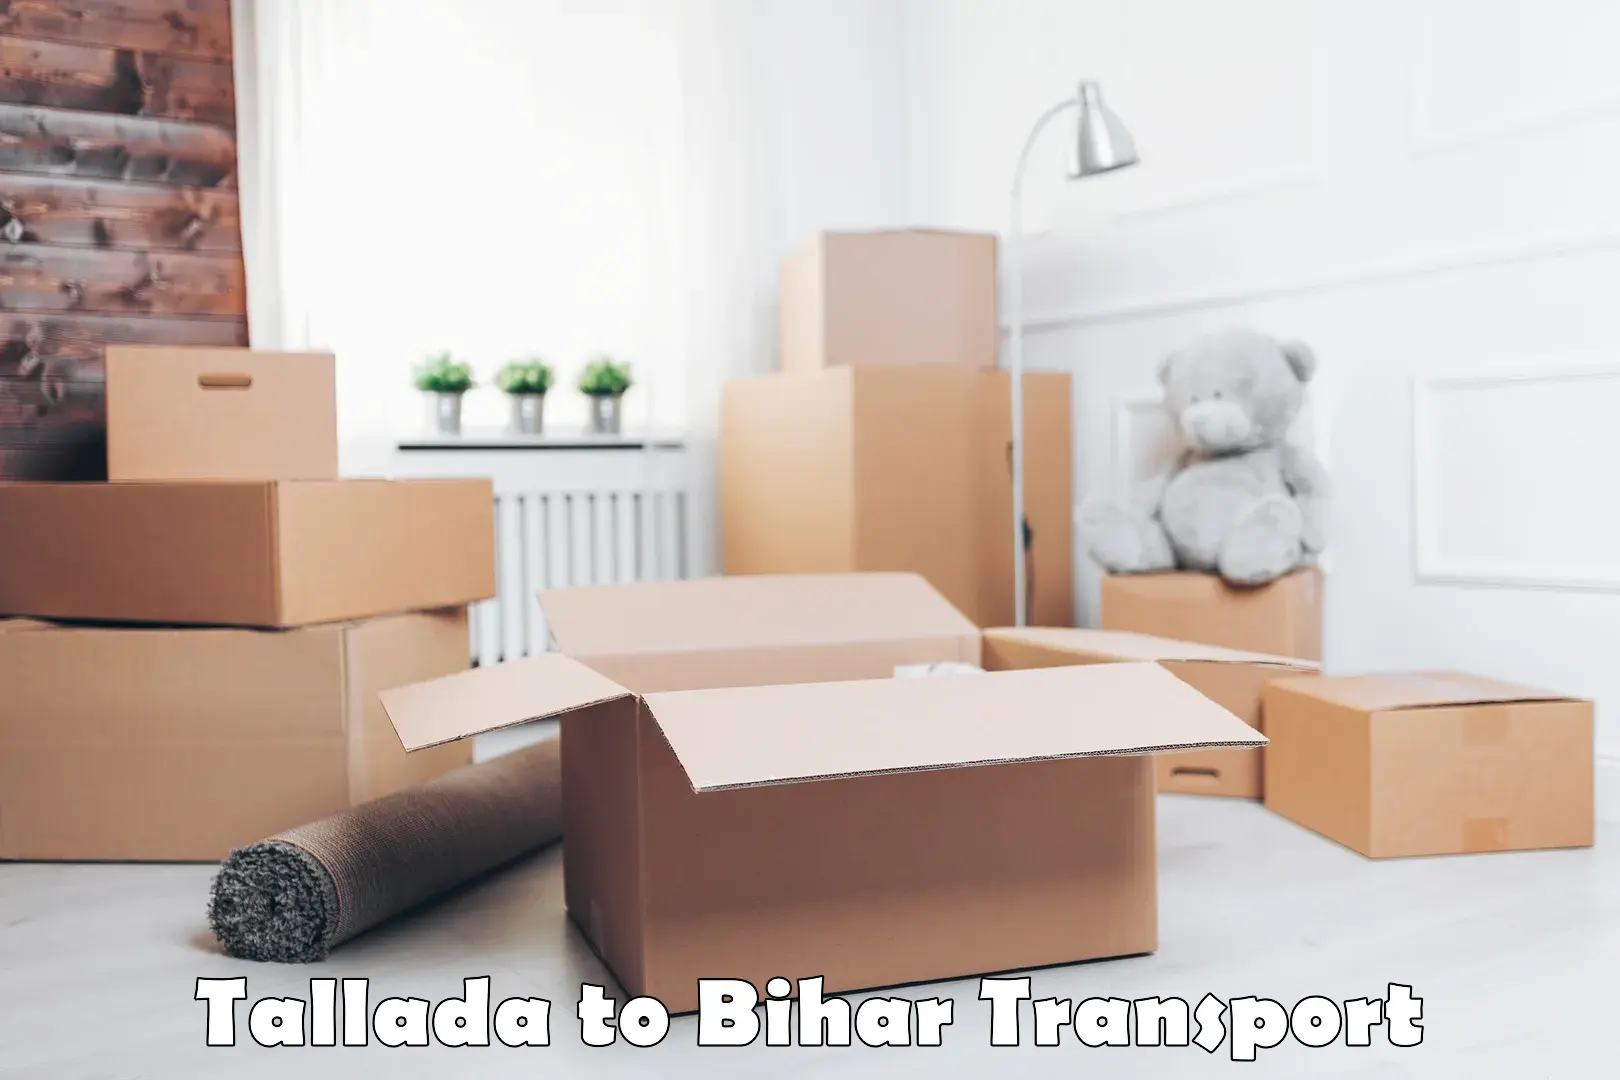 Transport in sharing Tallada to Bihar